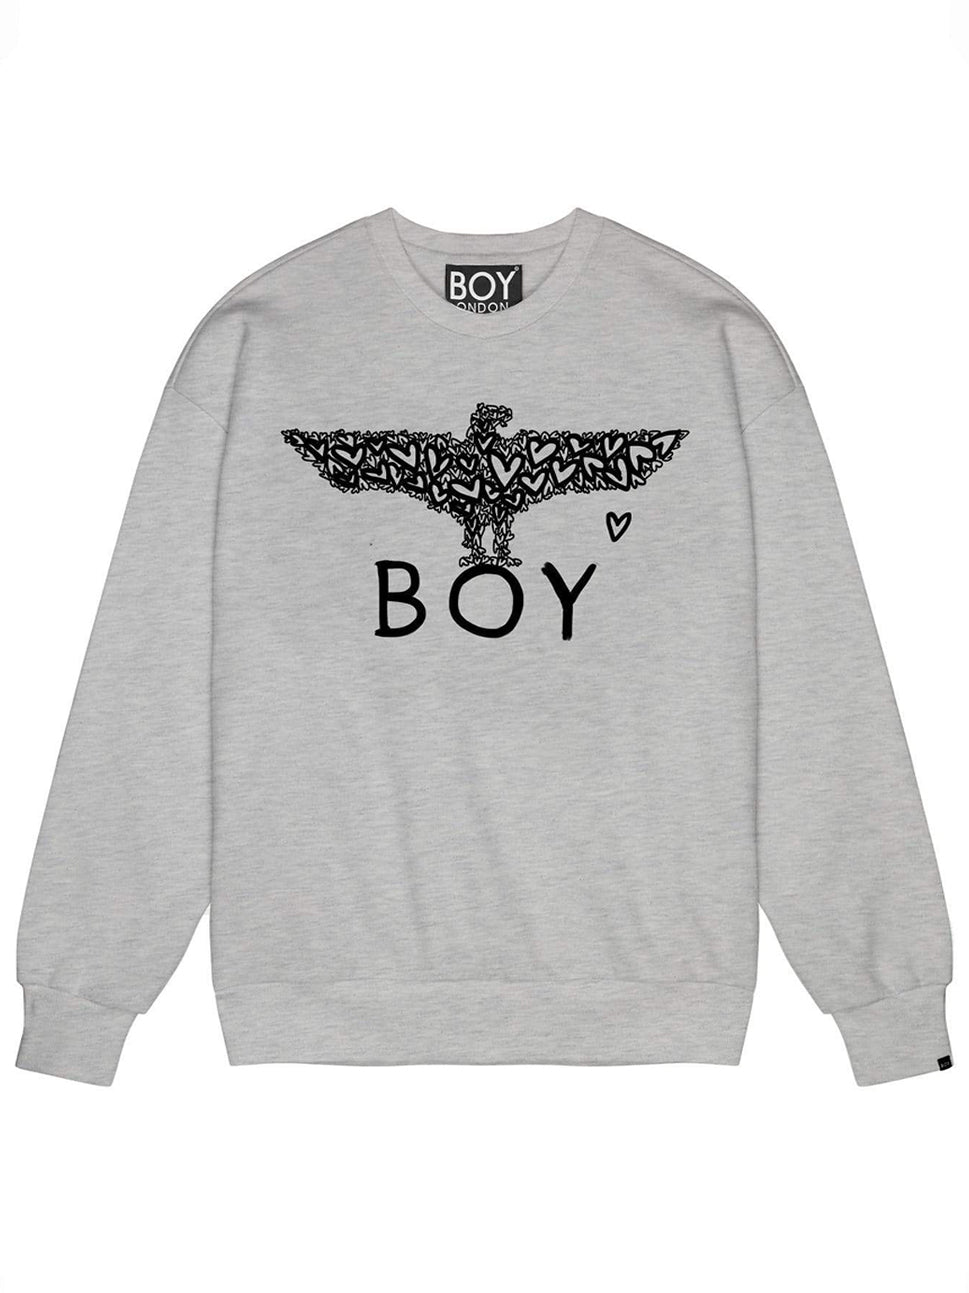 Boy London Hearts Grey Sweatshirt